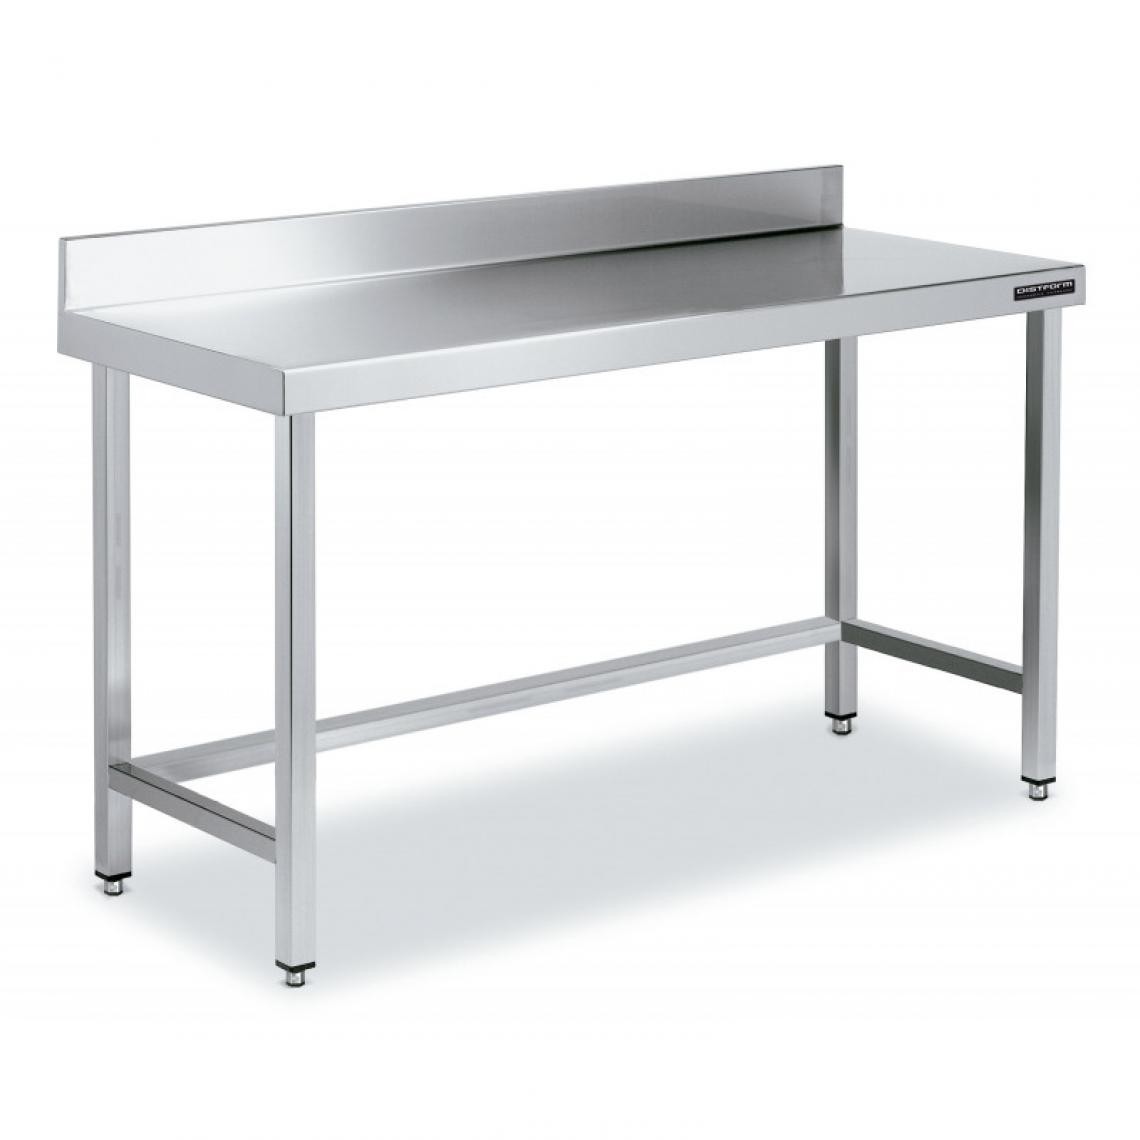 DISTFORM - Table de Travail Adossée Inox avec Renforts - Gamme 600 - Hauteur 600 - Distform - Acier inoxydable1500x600 - Tables à manger